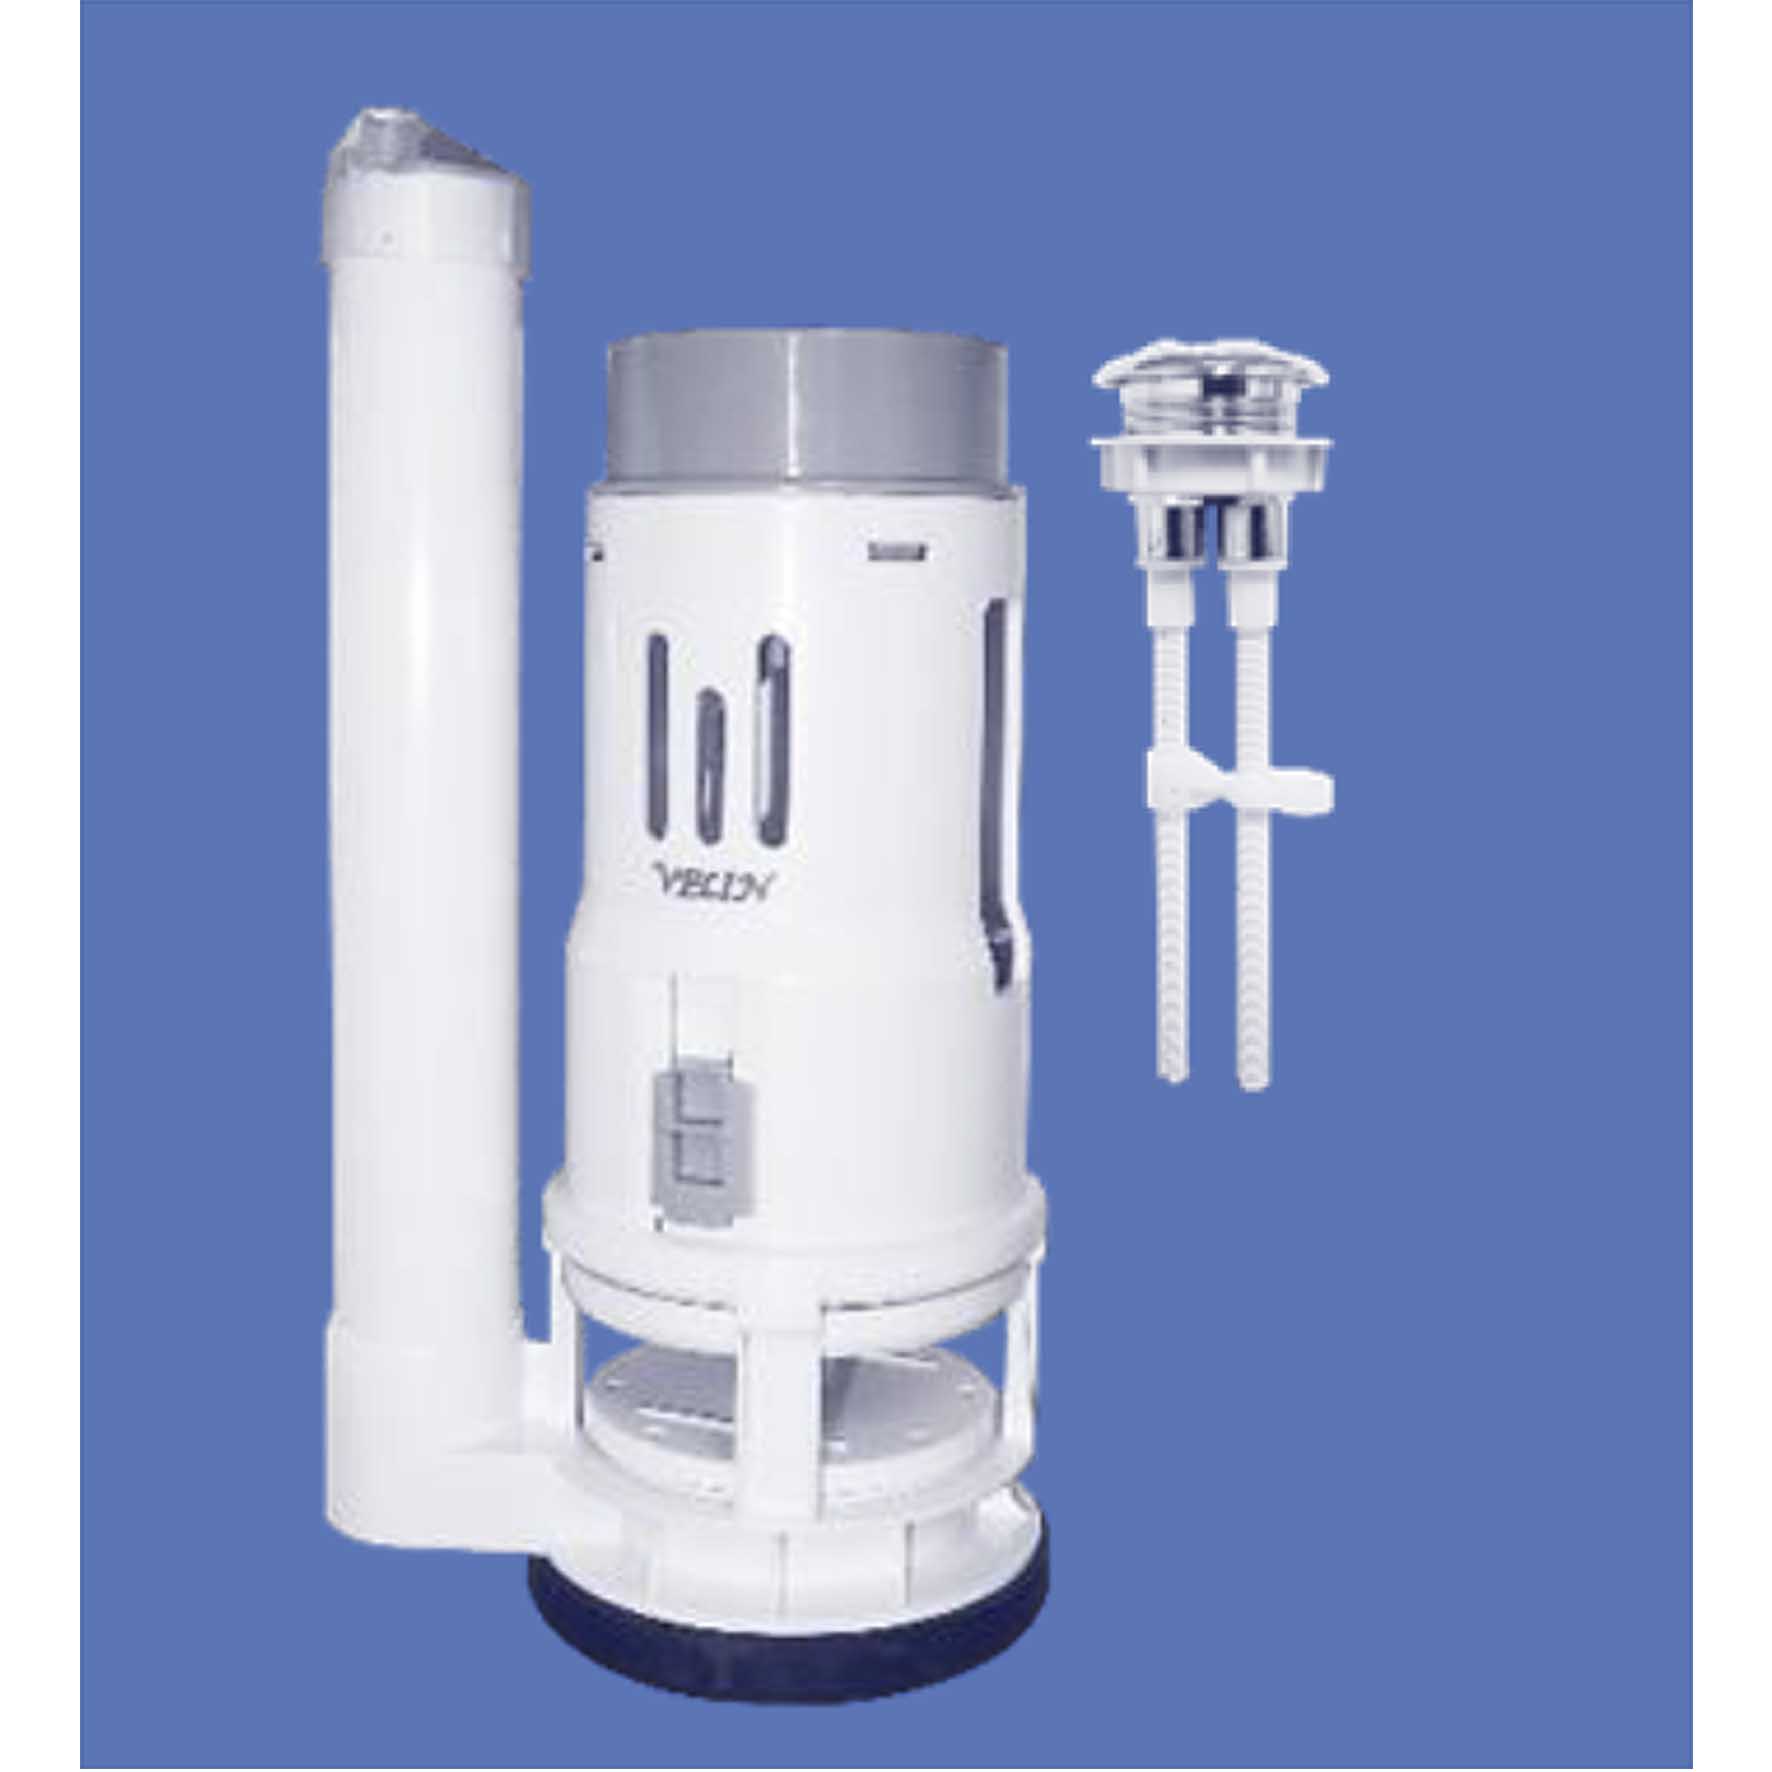 Velin : Water Closet Dual Flush Pump (Short) – A200S